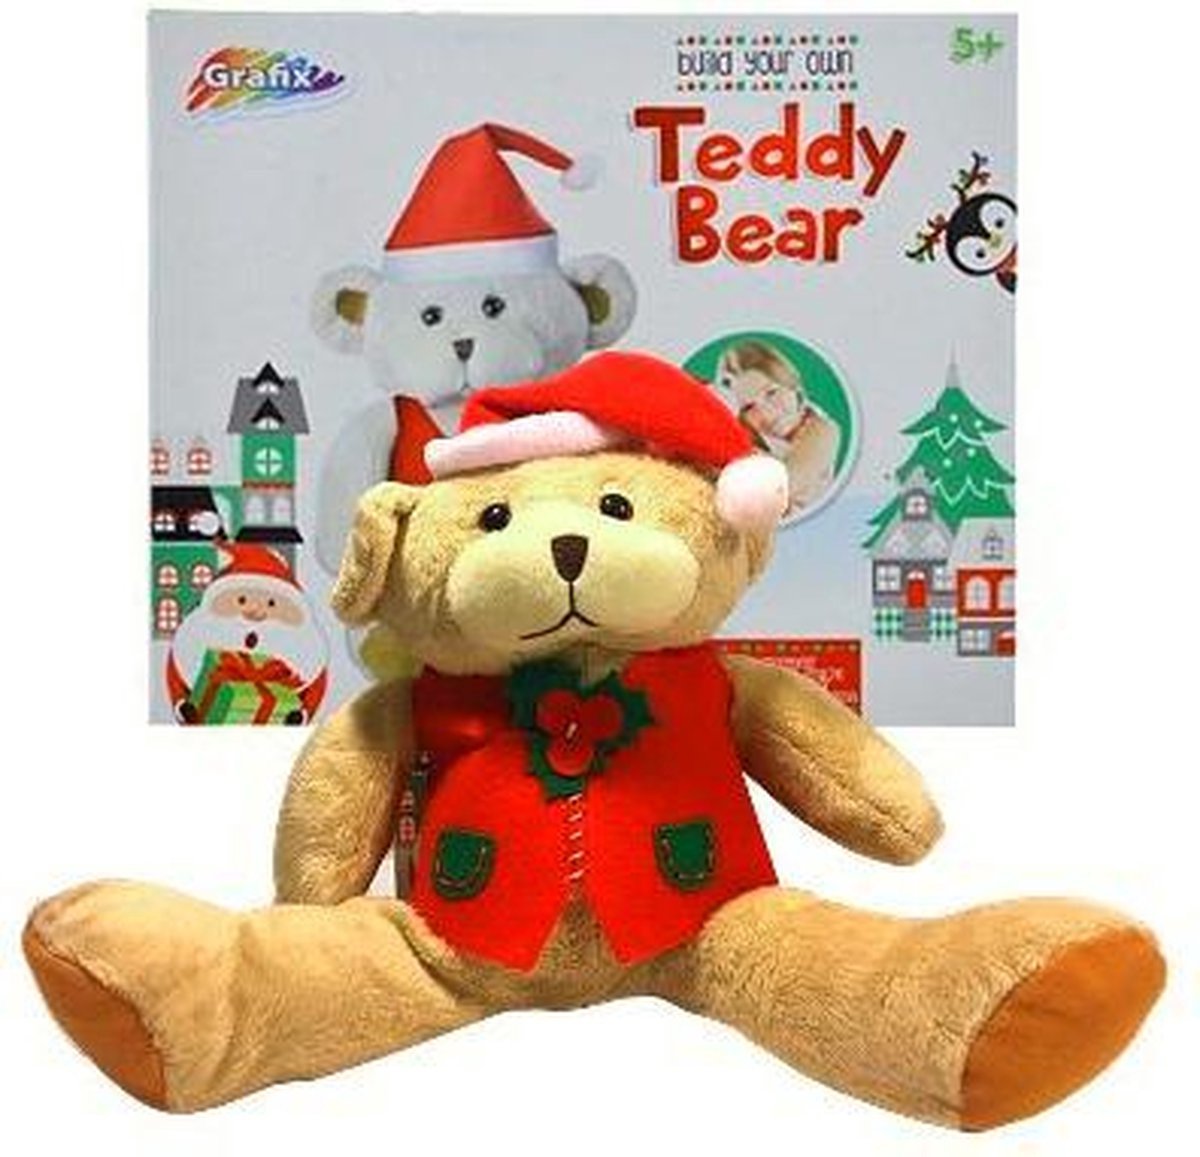 Maak je eigen Teddybeer - Knutsel Speelgoed voor Kinderen Jongens Meisjes | Build Your Own Teddybear Plush Toy | Knutselen Spelen met je eigen DIY beer!